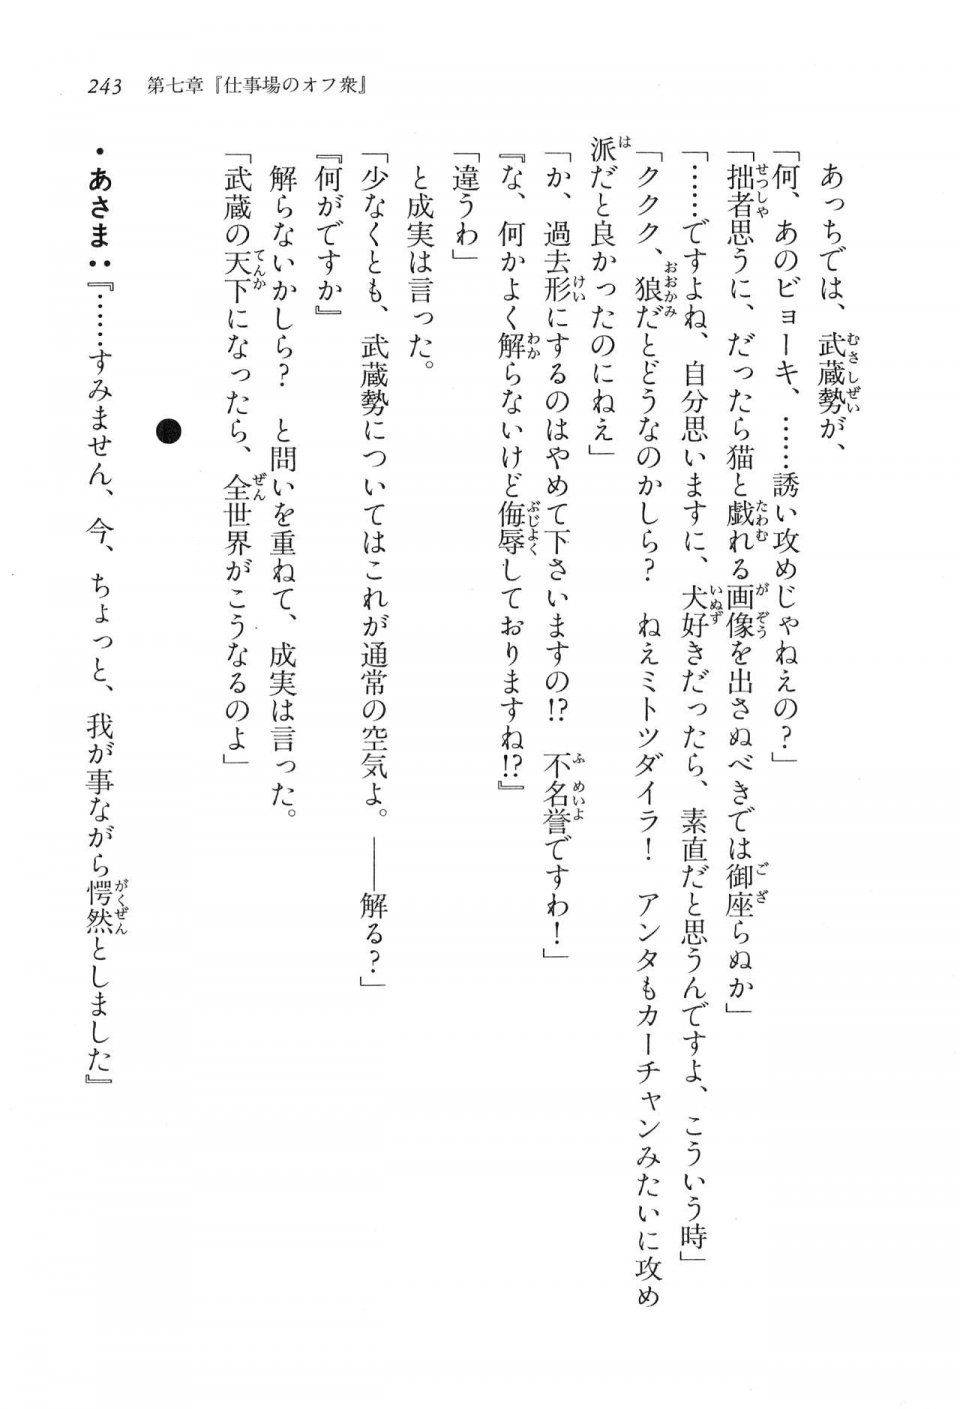 Kyoukai Senjou no Horizon LN Vol 16(7A) - Photo #243